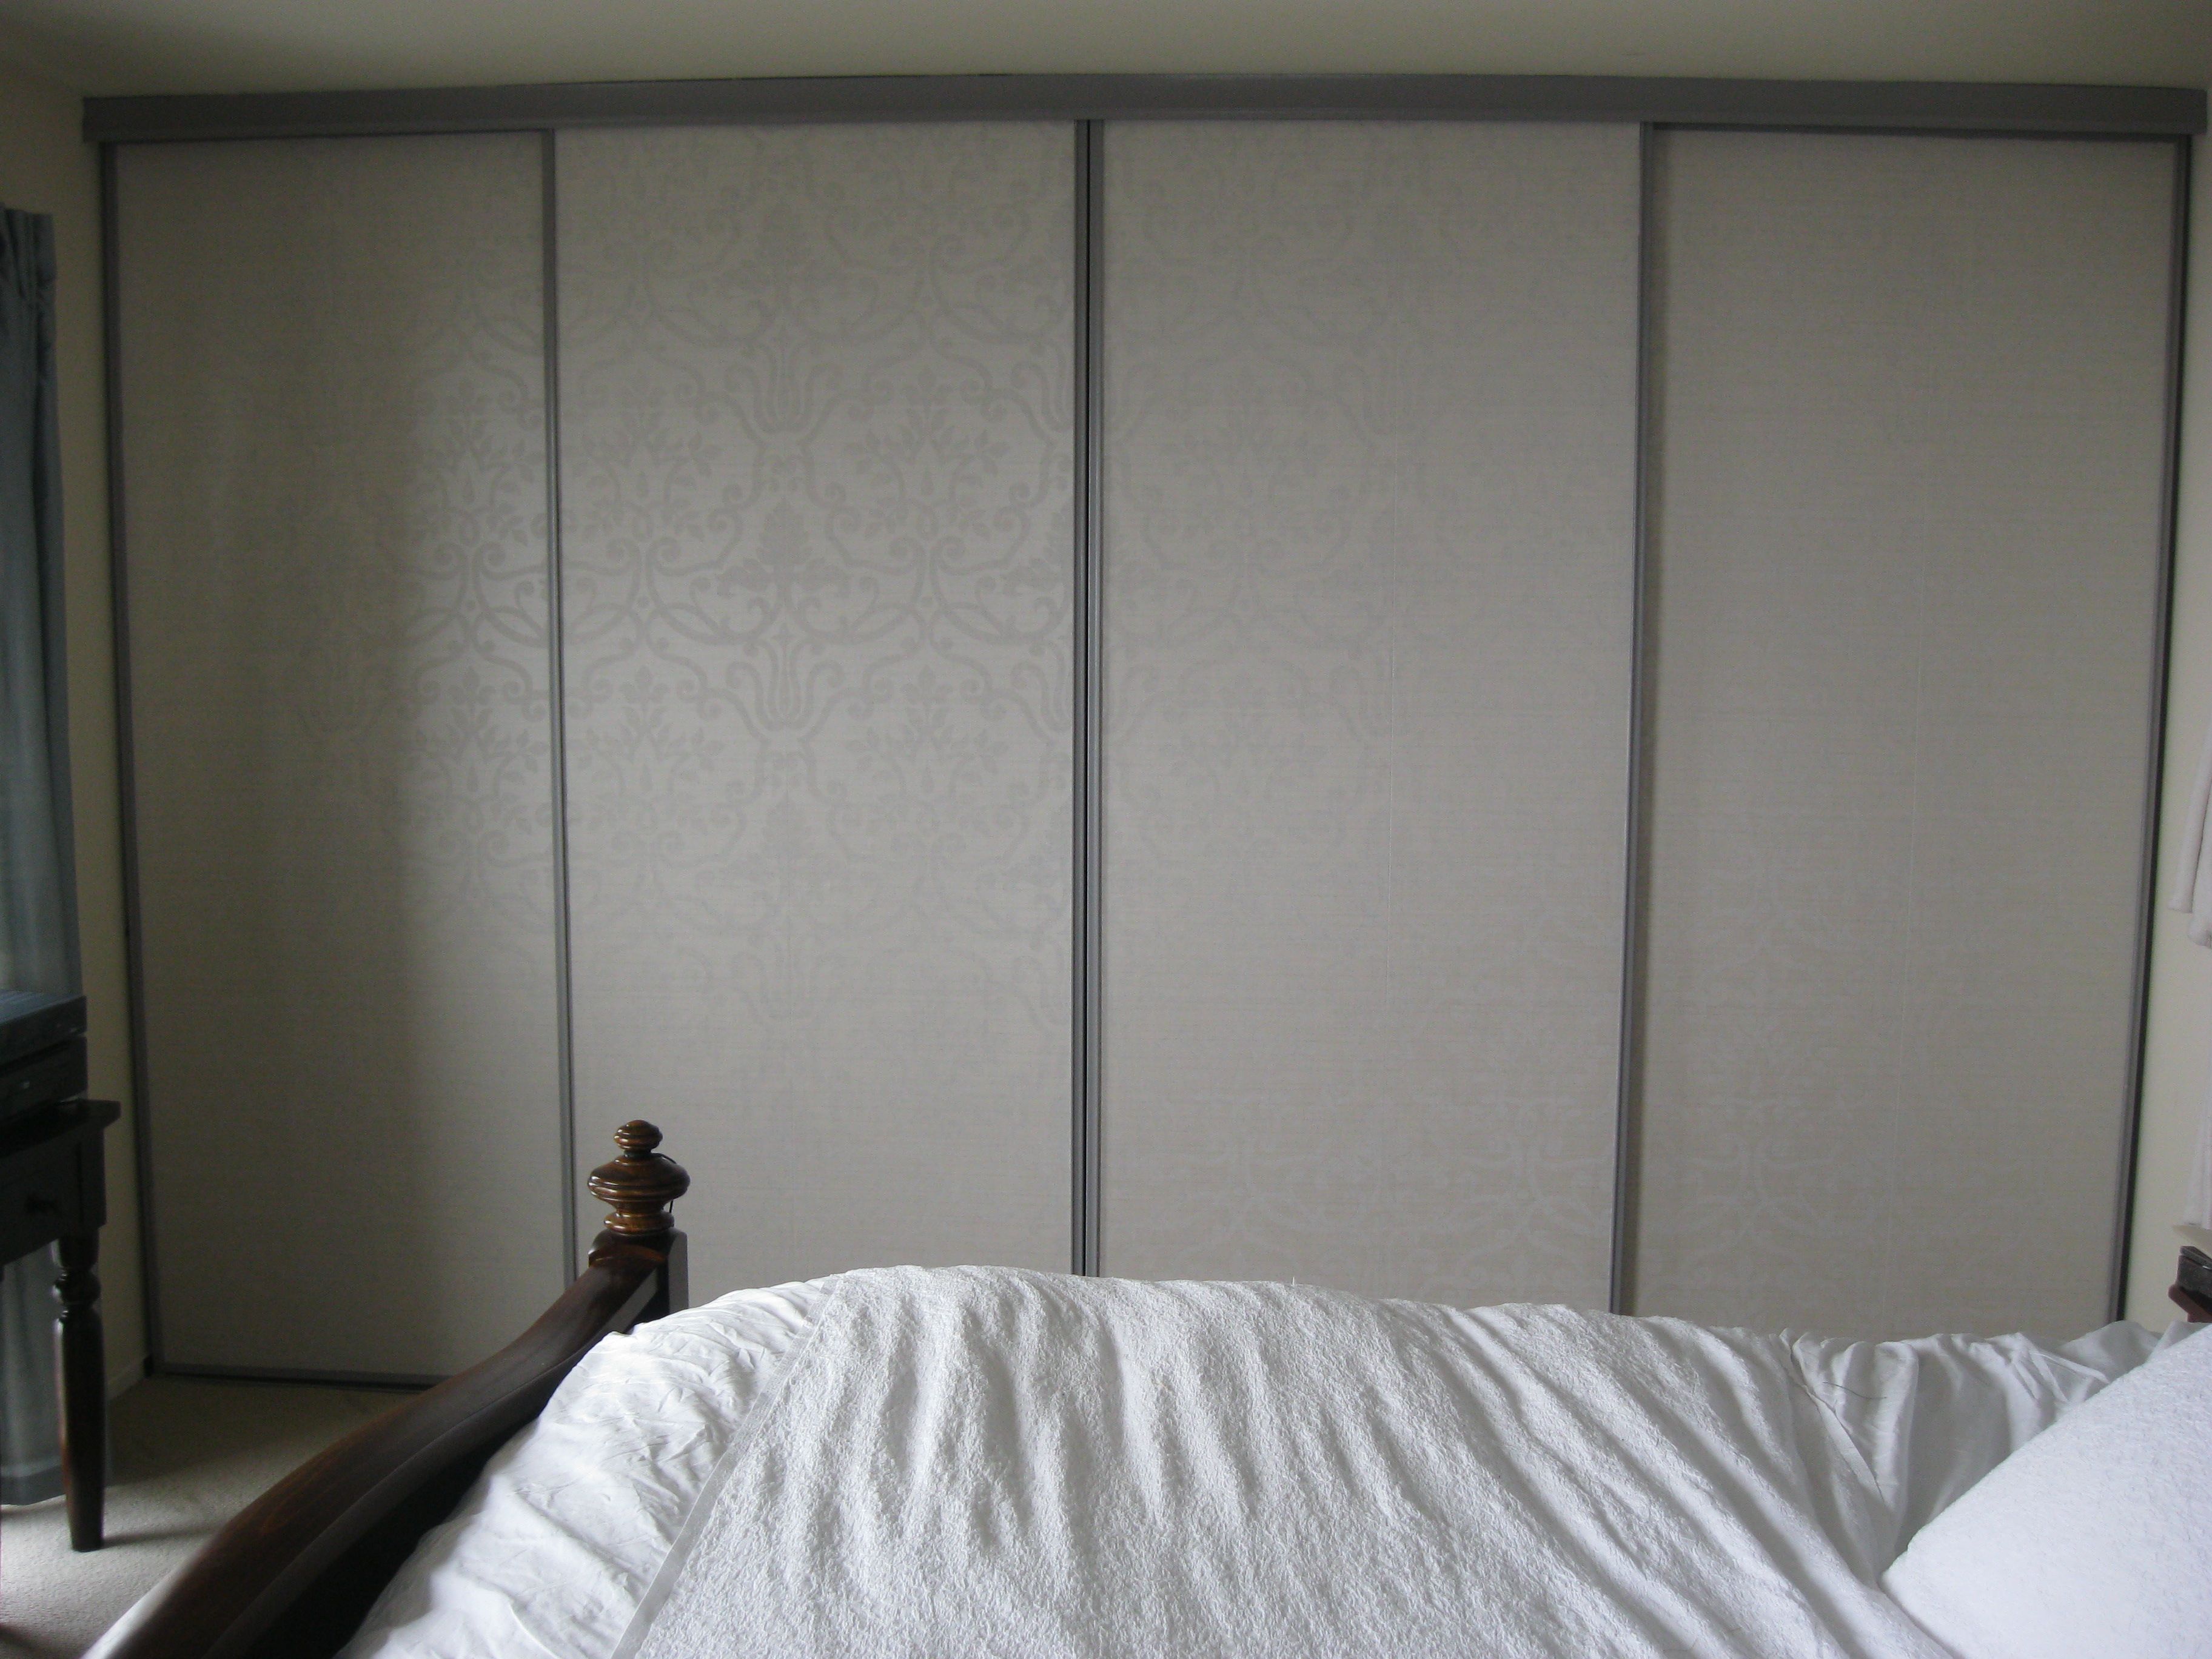 Closet Doors With Wallpaper